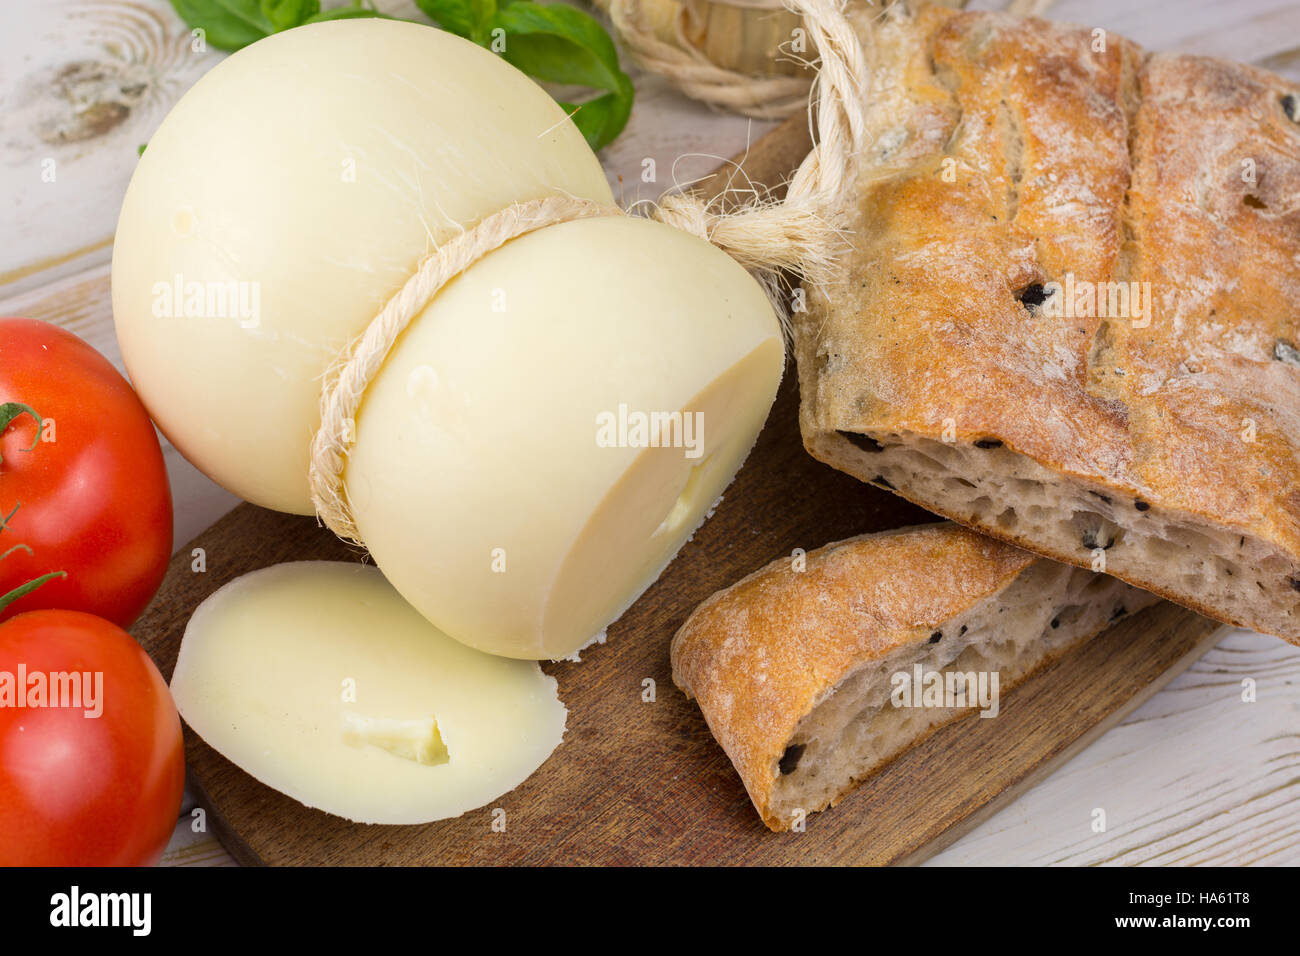 Miglior cibo italiano - fresco formaggio caciocavallo, vino rosso, pane con olive, pomodori Foto Stock